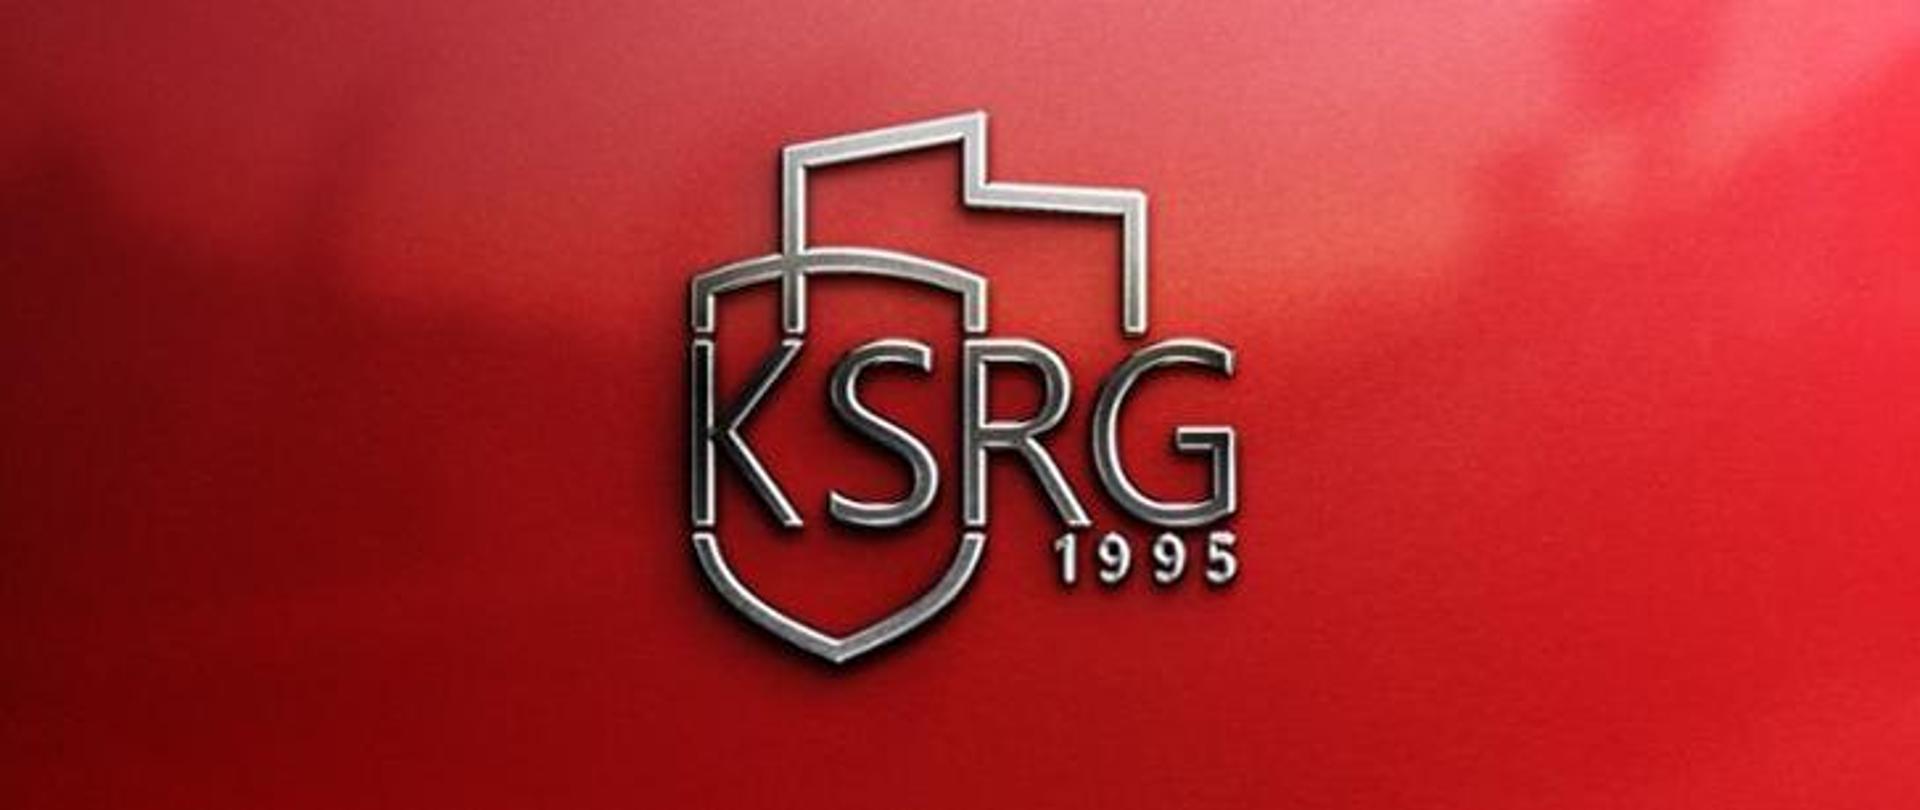 Nowy znak do stosowania oznaczania systemu KSRG